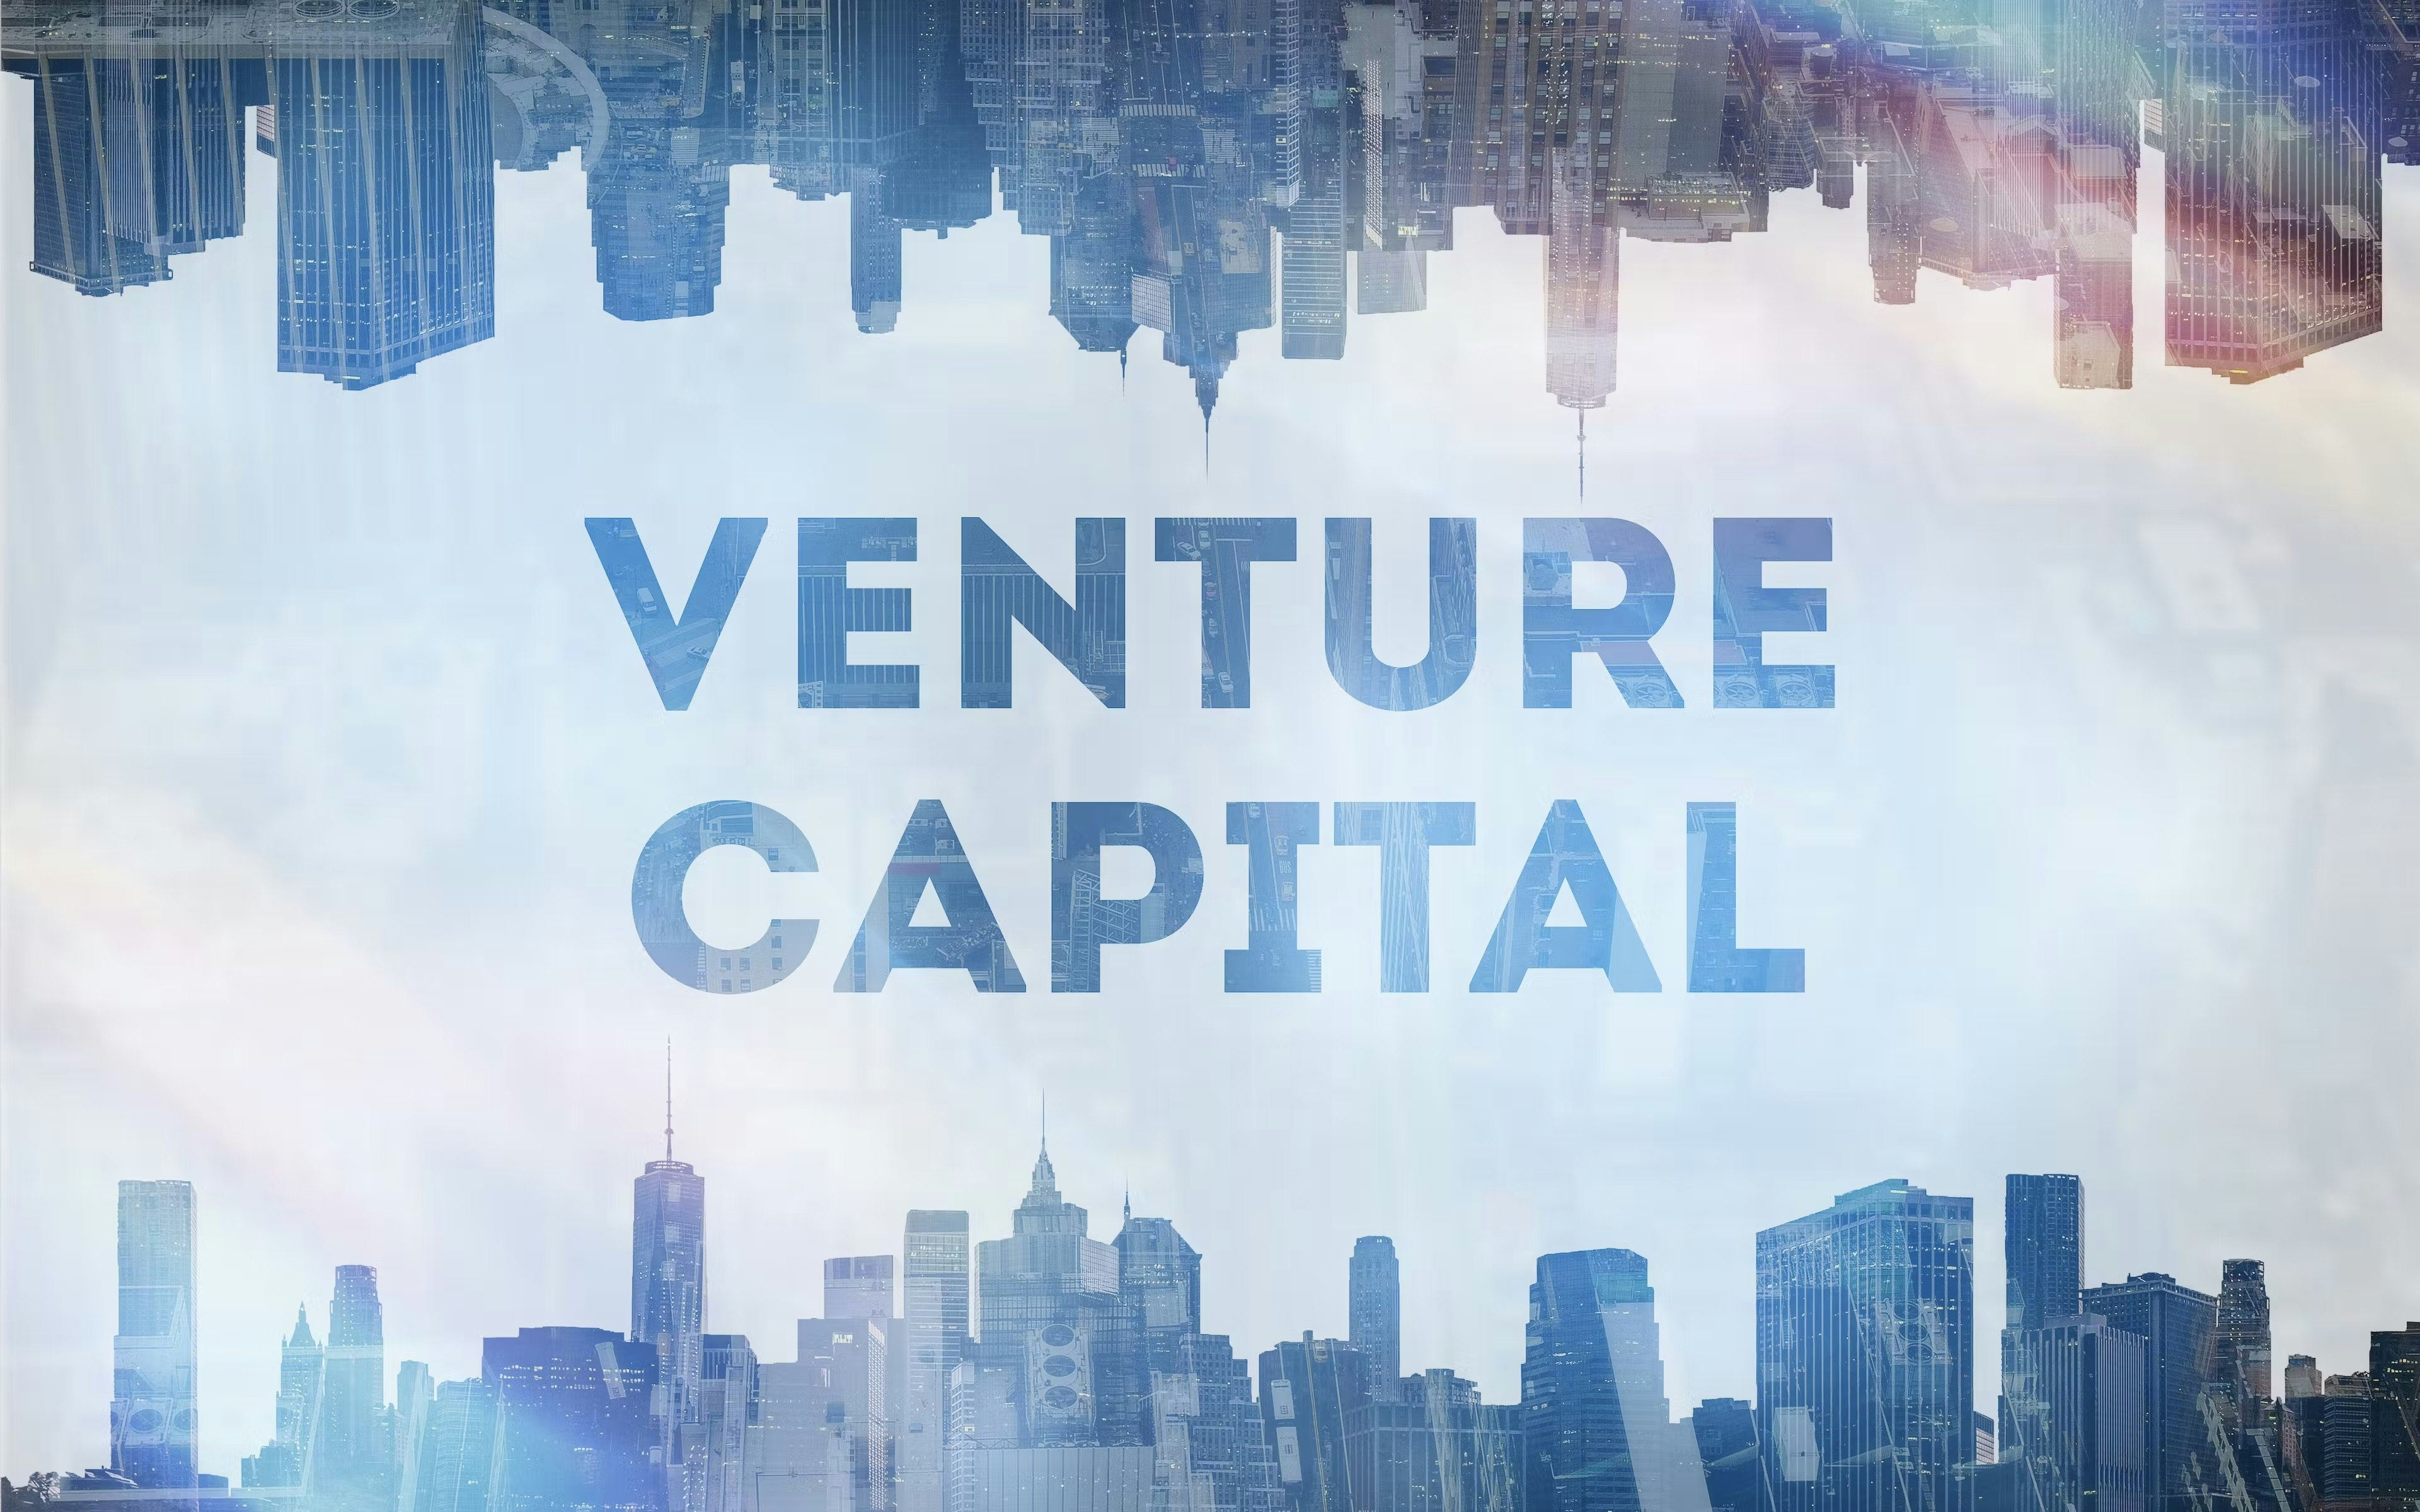  News zu Startups, Venture Capital und